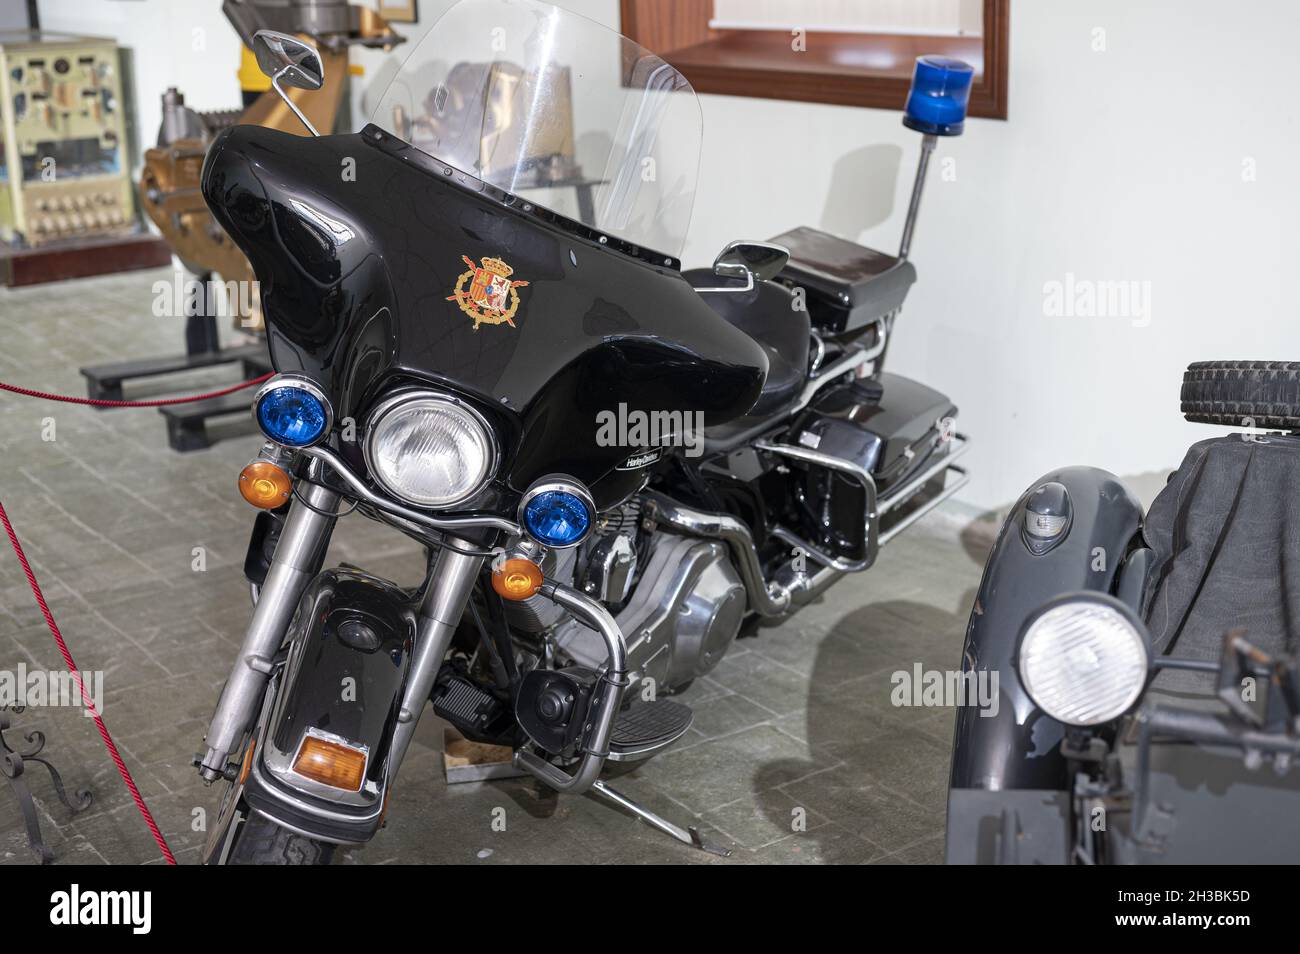 VALENCIA, SPANIEN - 01. Oktober 2021: Ein altes Spanisches Polizeimotorrad von Harley Davidson in Valencia, Spanien Stockfoto